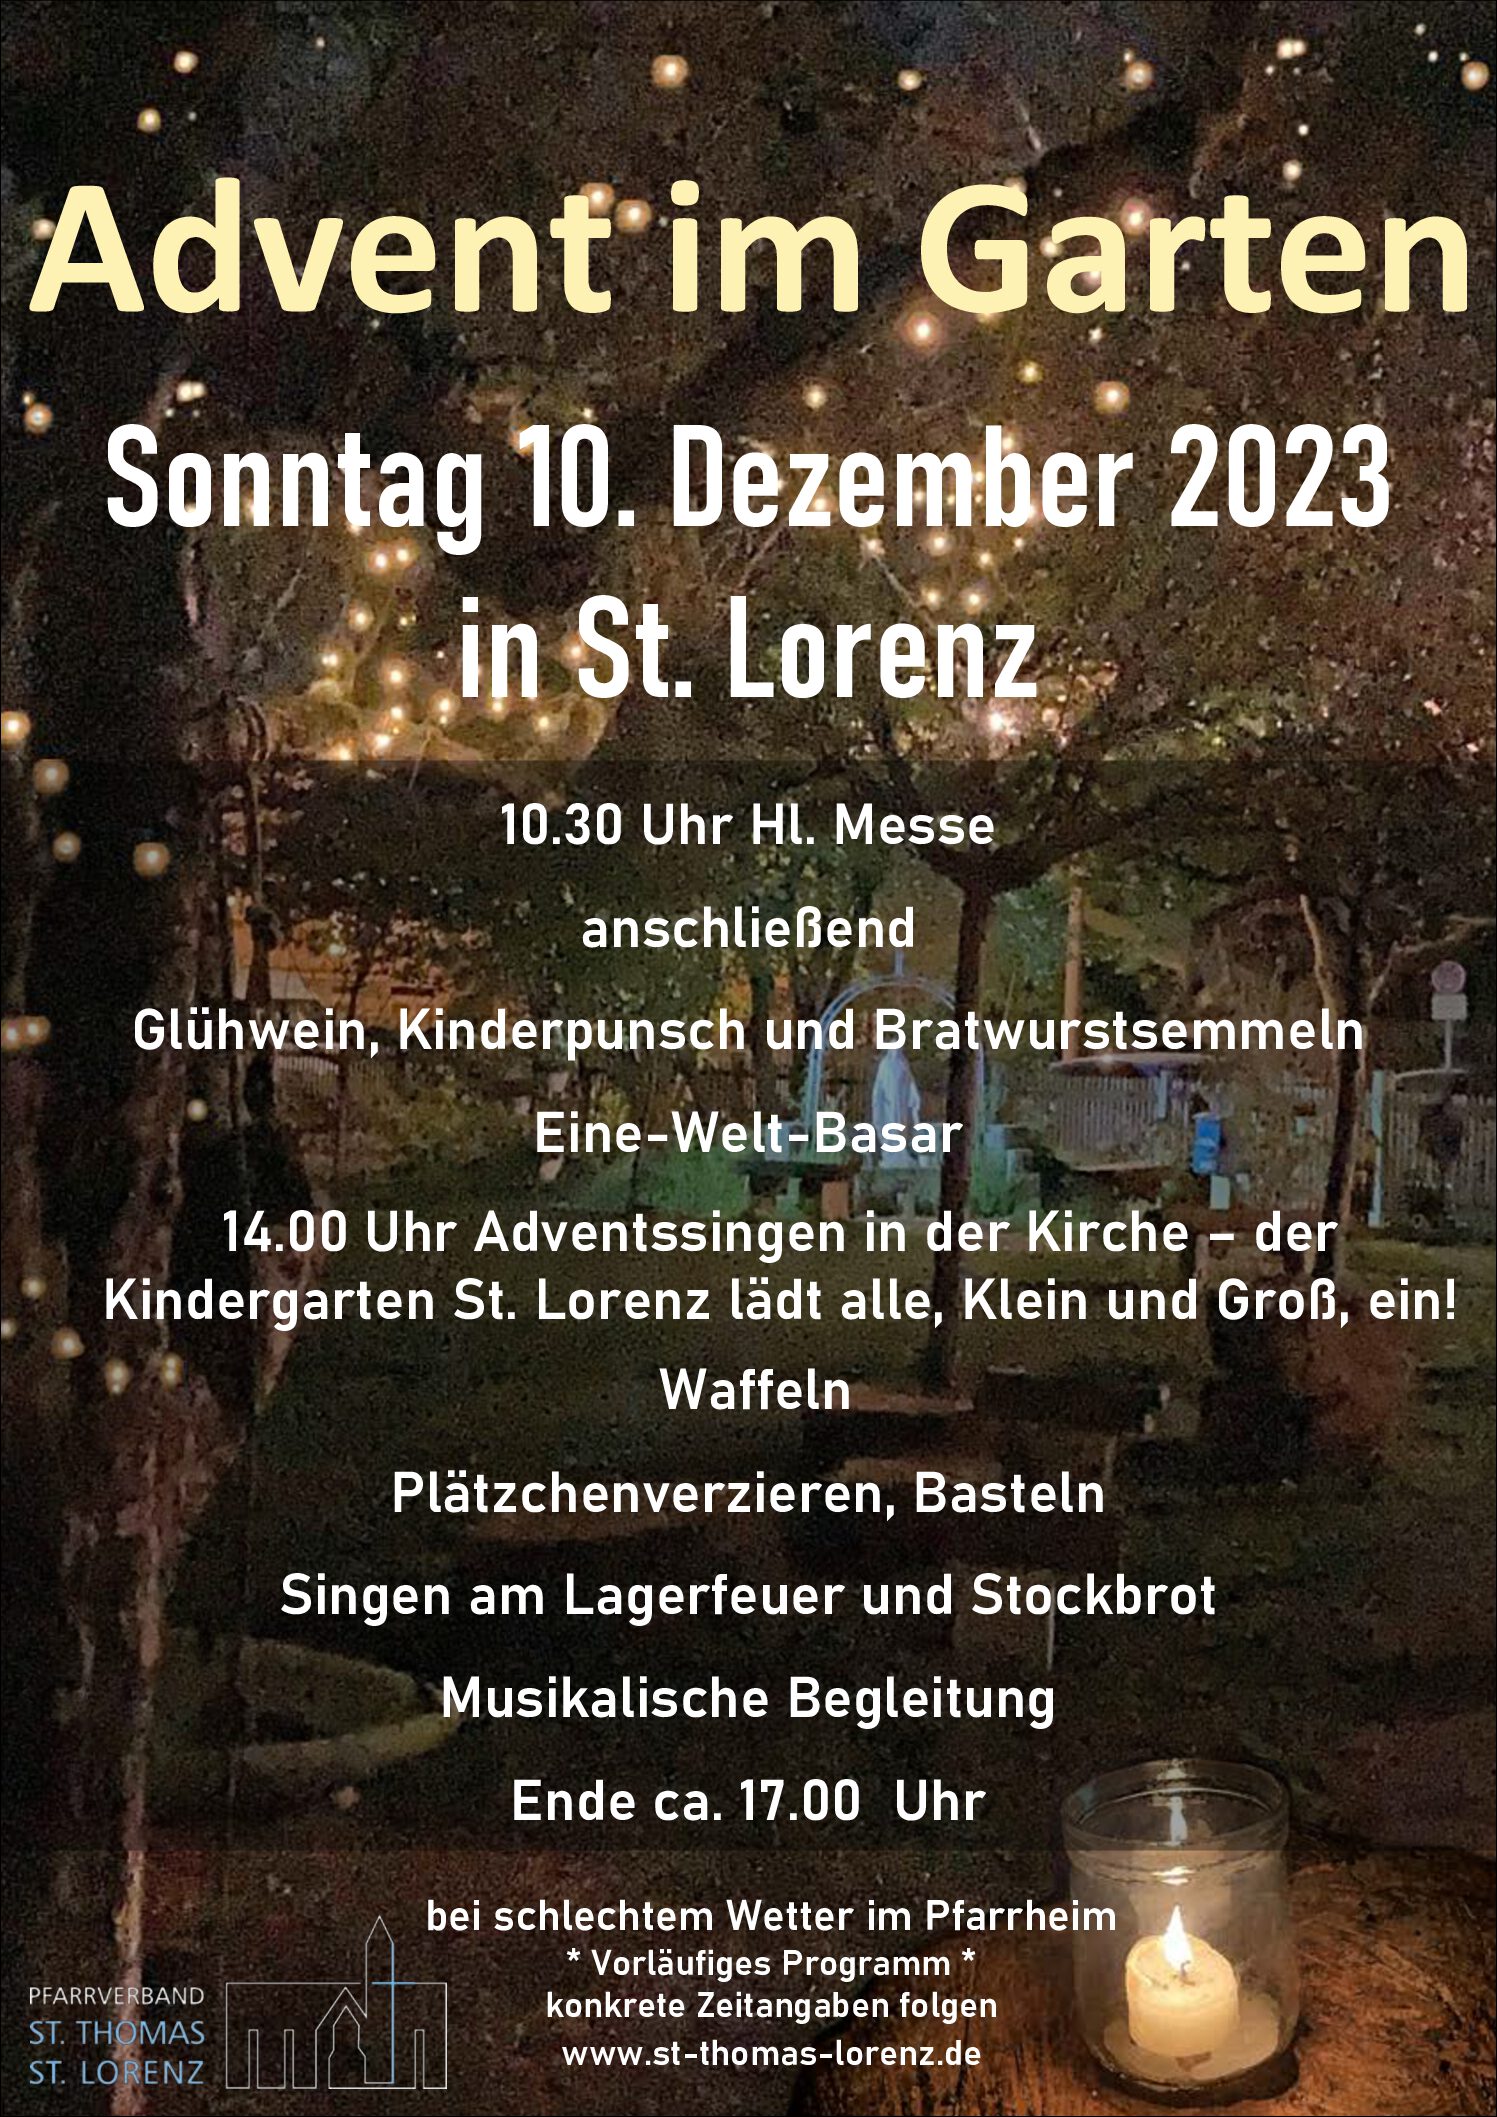 Advent im Garten in St. Lorenz